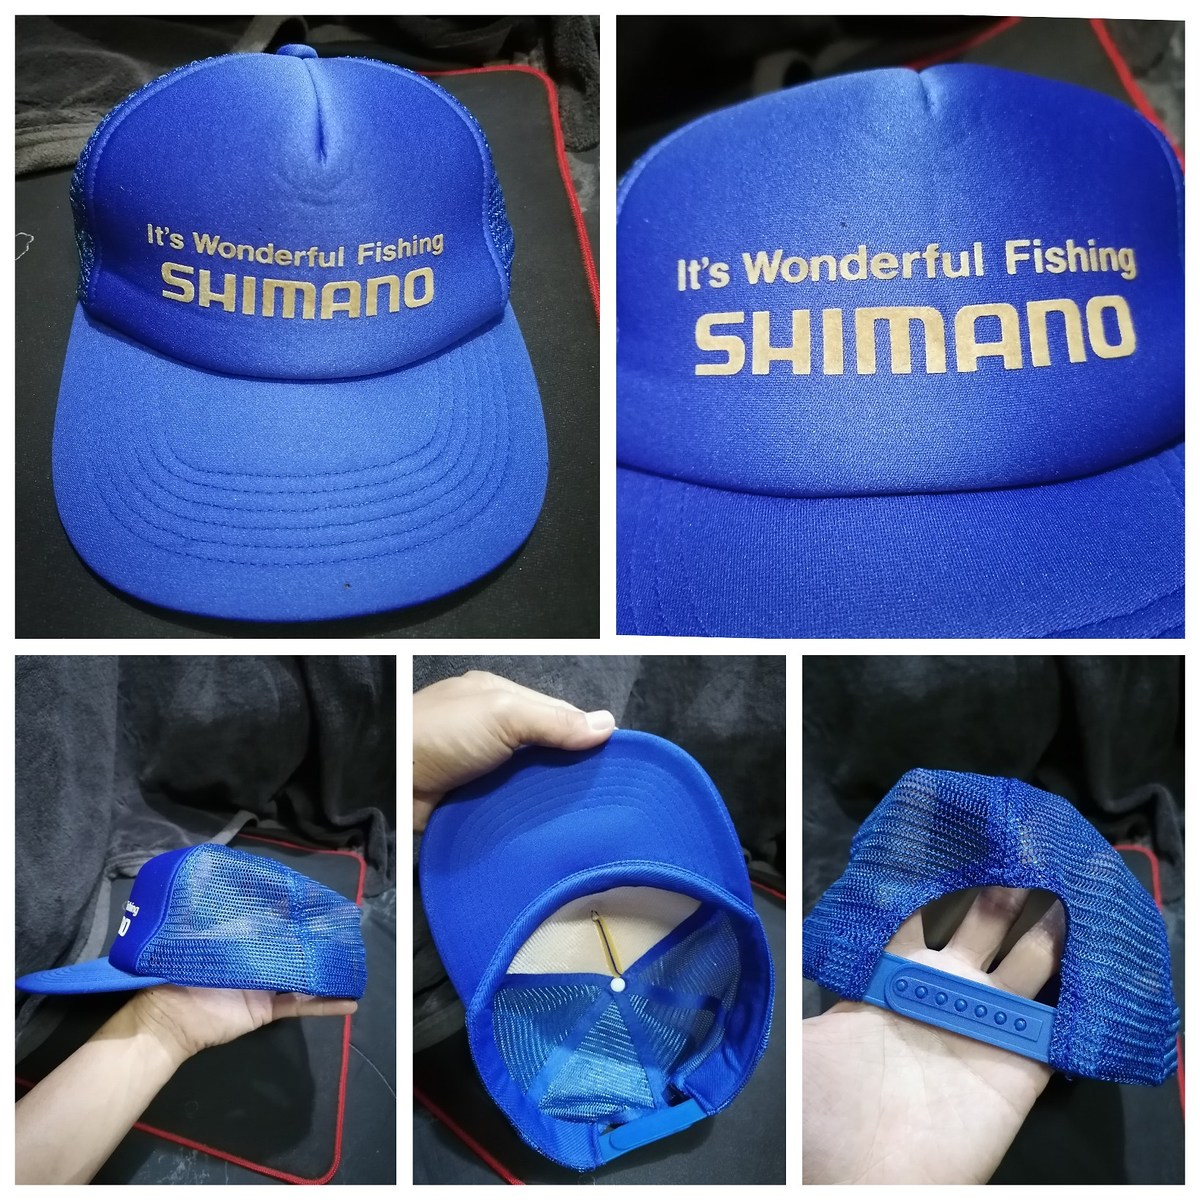 15.หมวกงานวินเทจ​ japan​  แบรนด์​ Shimano.​แท้​ โดยรวมสีสดยังสวย​ ขนาด​ฟรี​ไซ​ร์​สามารถ​ปรับ​ขนาด​ได